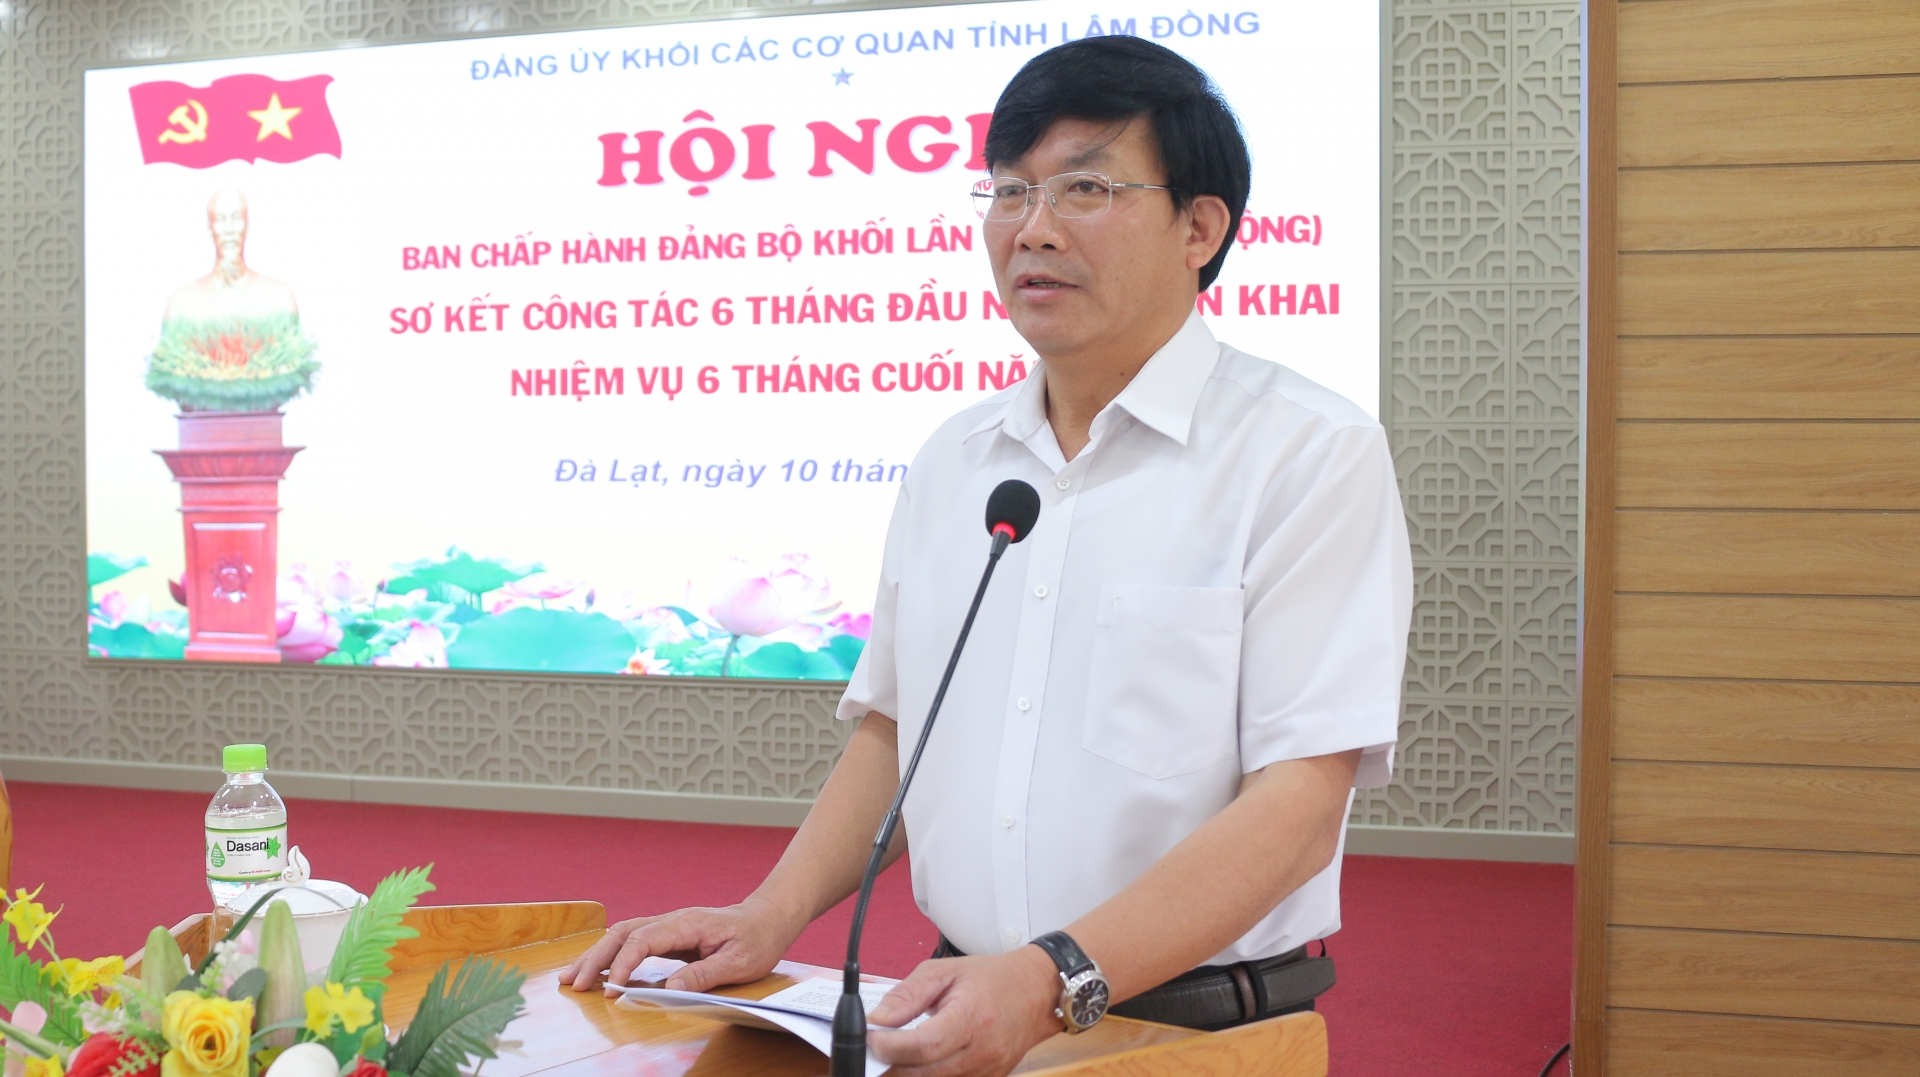 Bí thư Đảng ủy Khối các cơ quan tỉnh Hoàng Thanh Hải phát biểu kết luận hội nghị